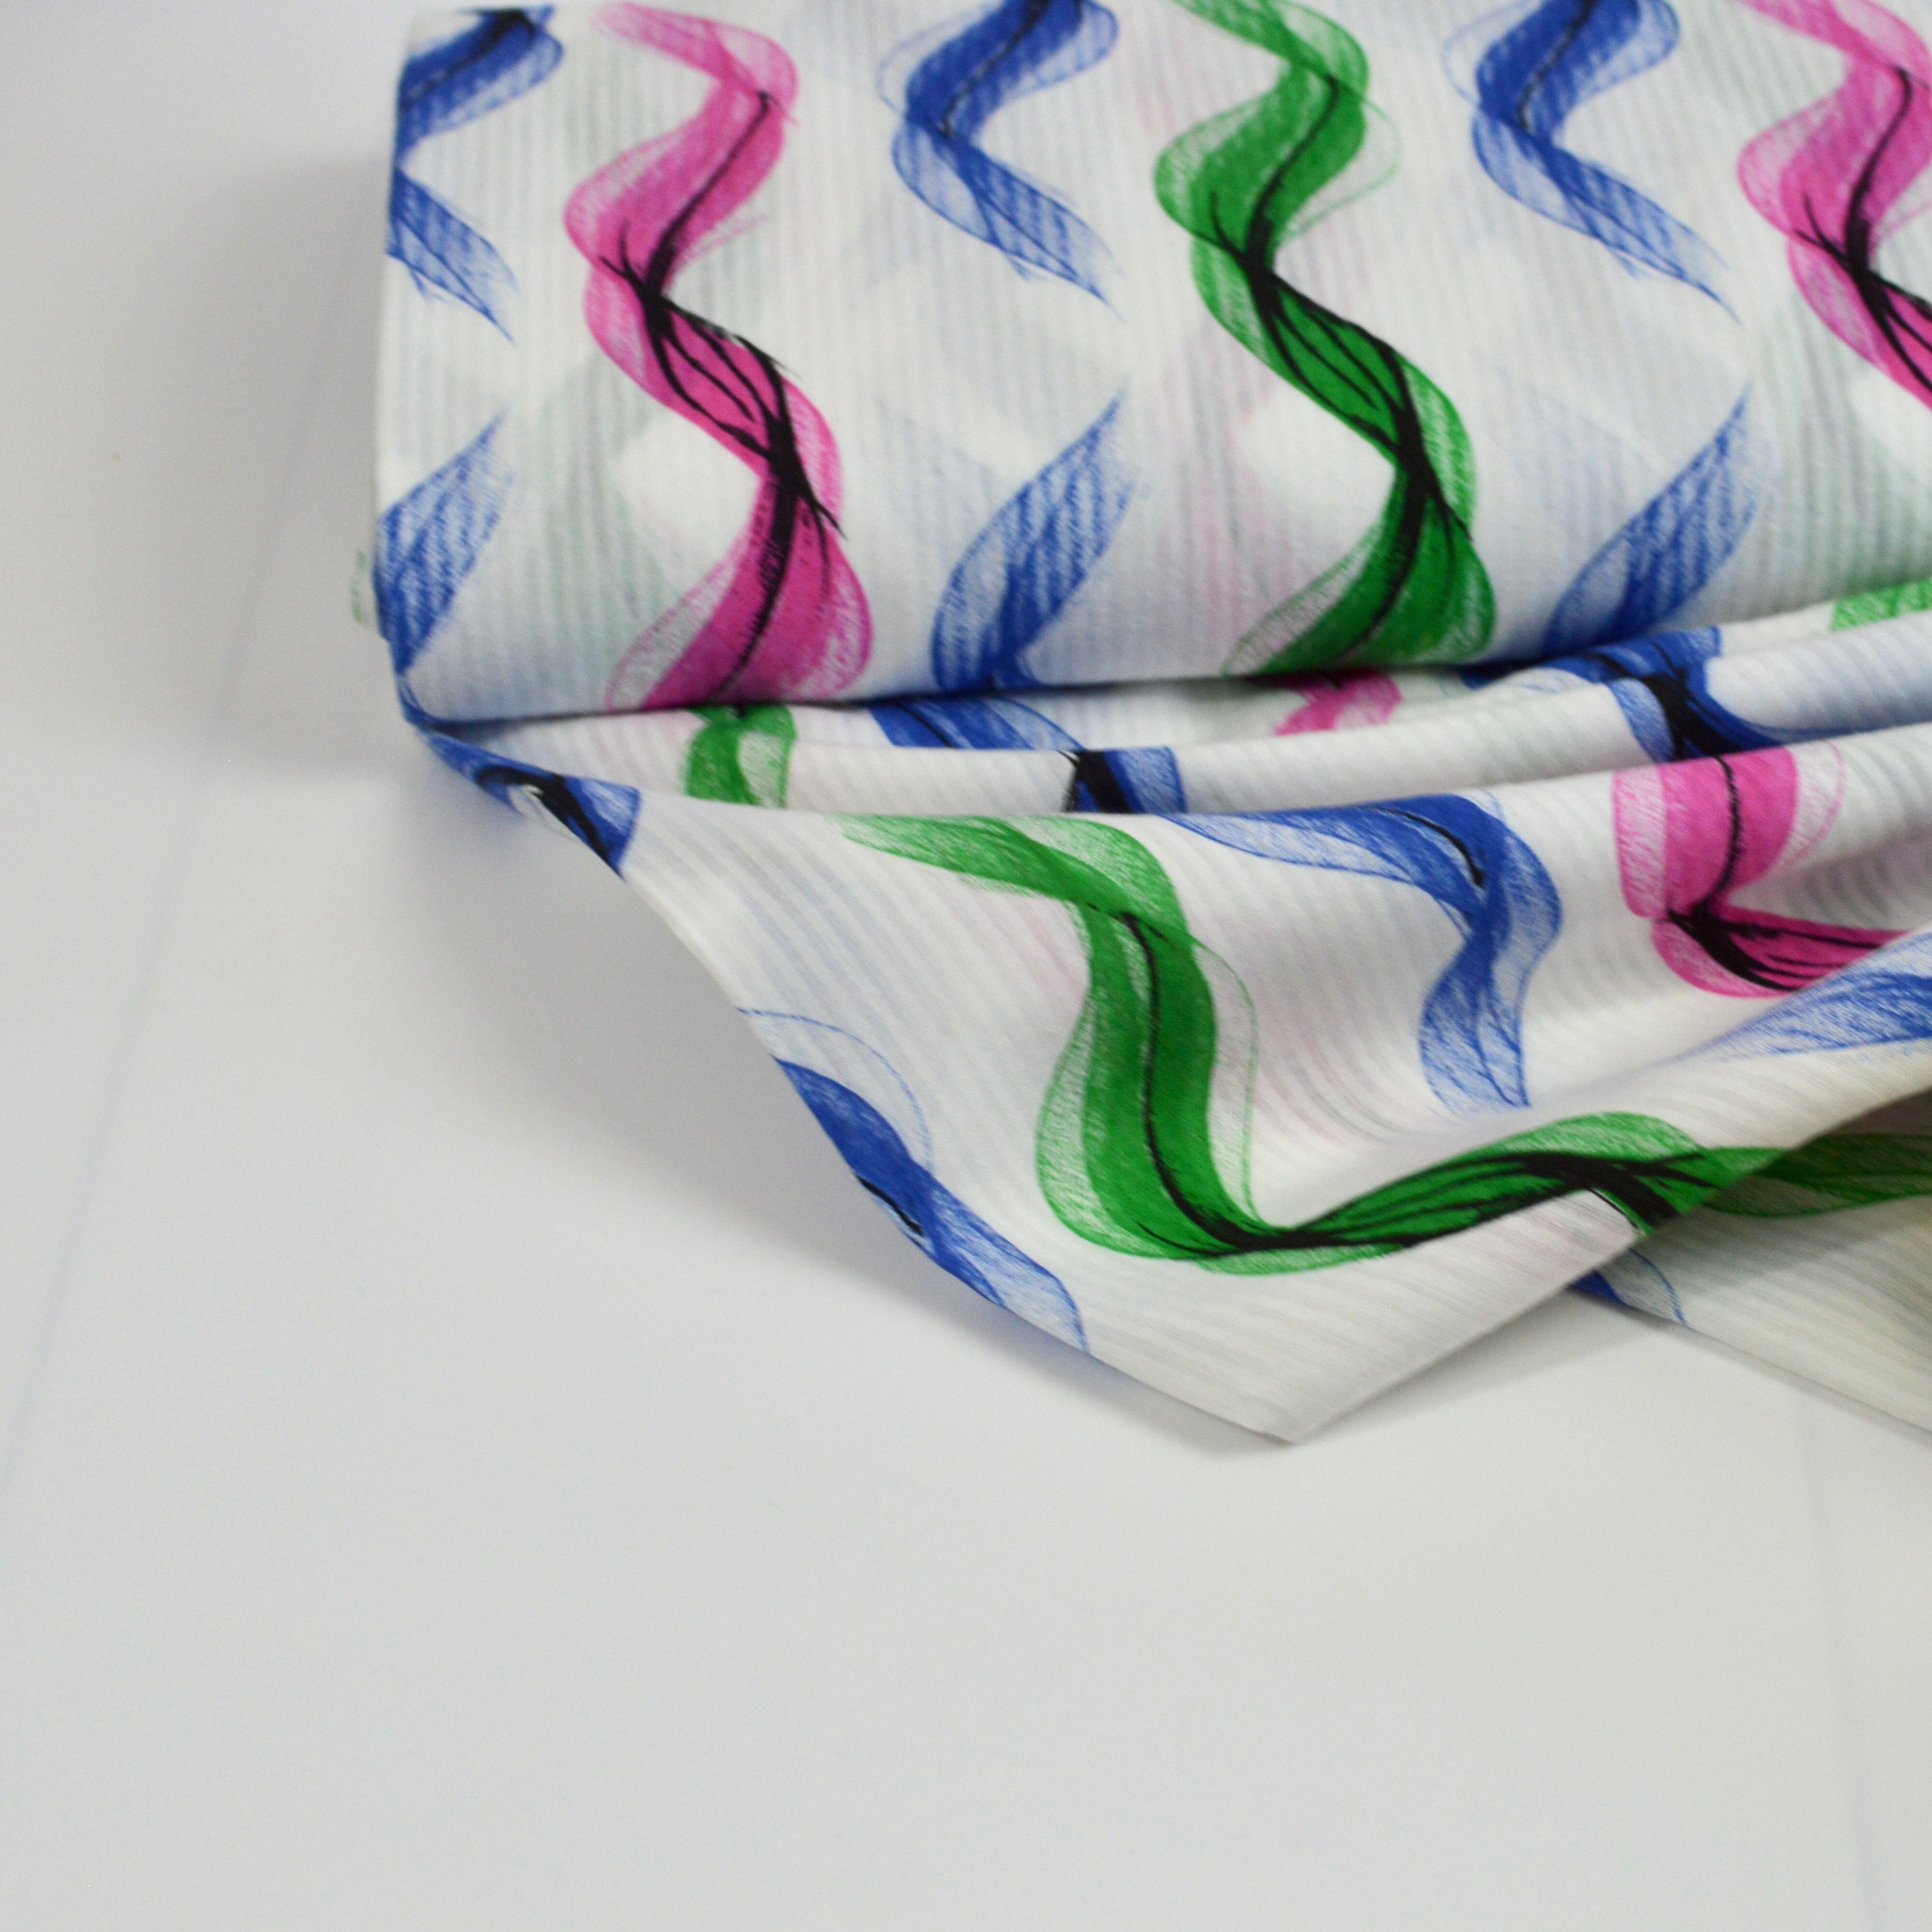 Seersucker/Viskose - Wellen pink, blau, grün auf weiß Fabric poshpinks